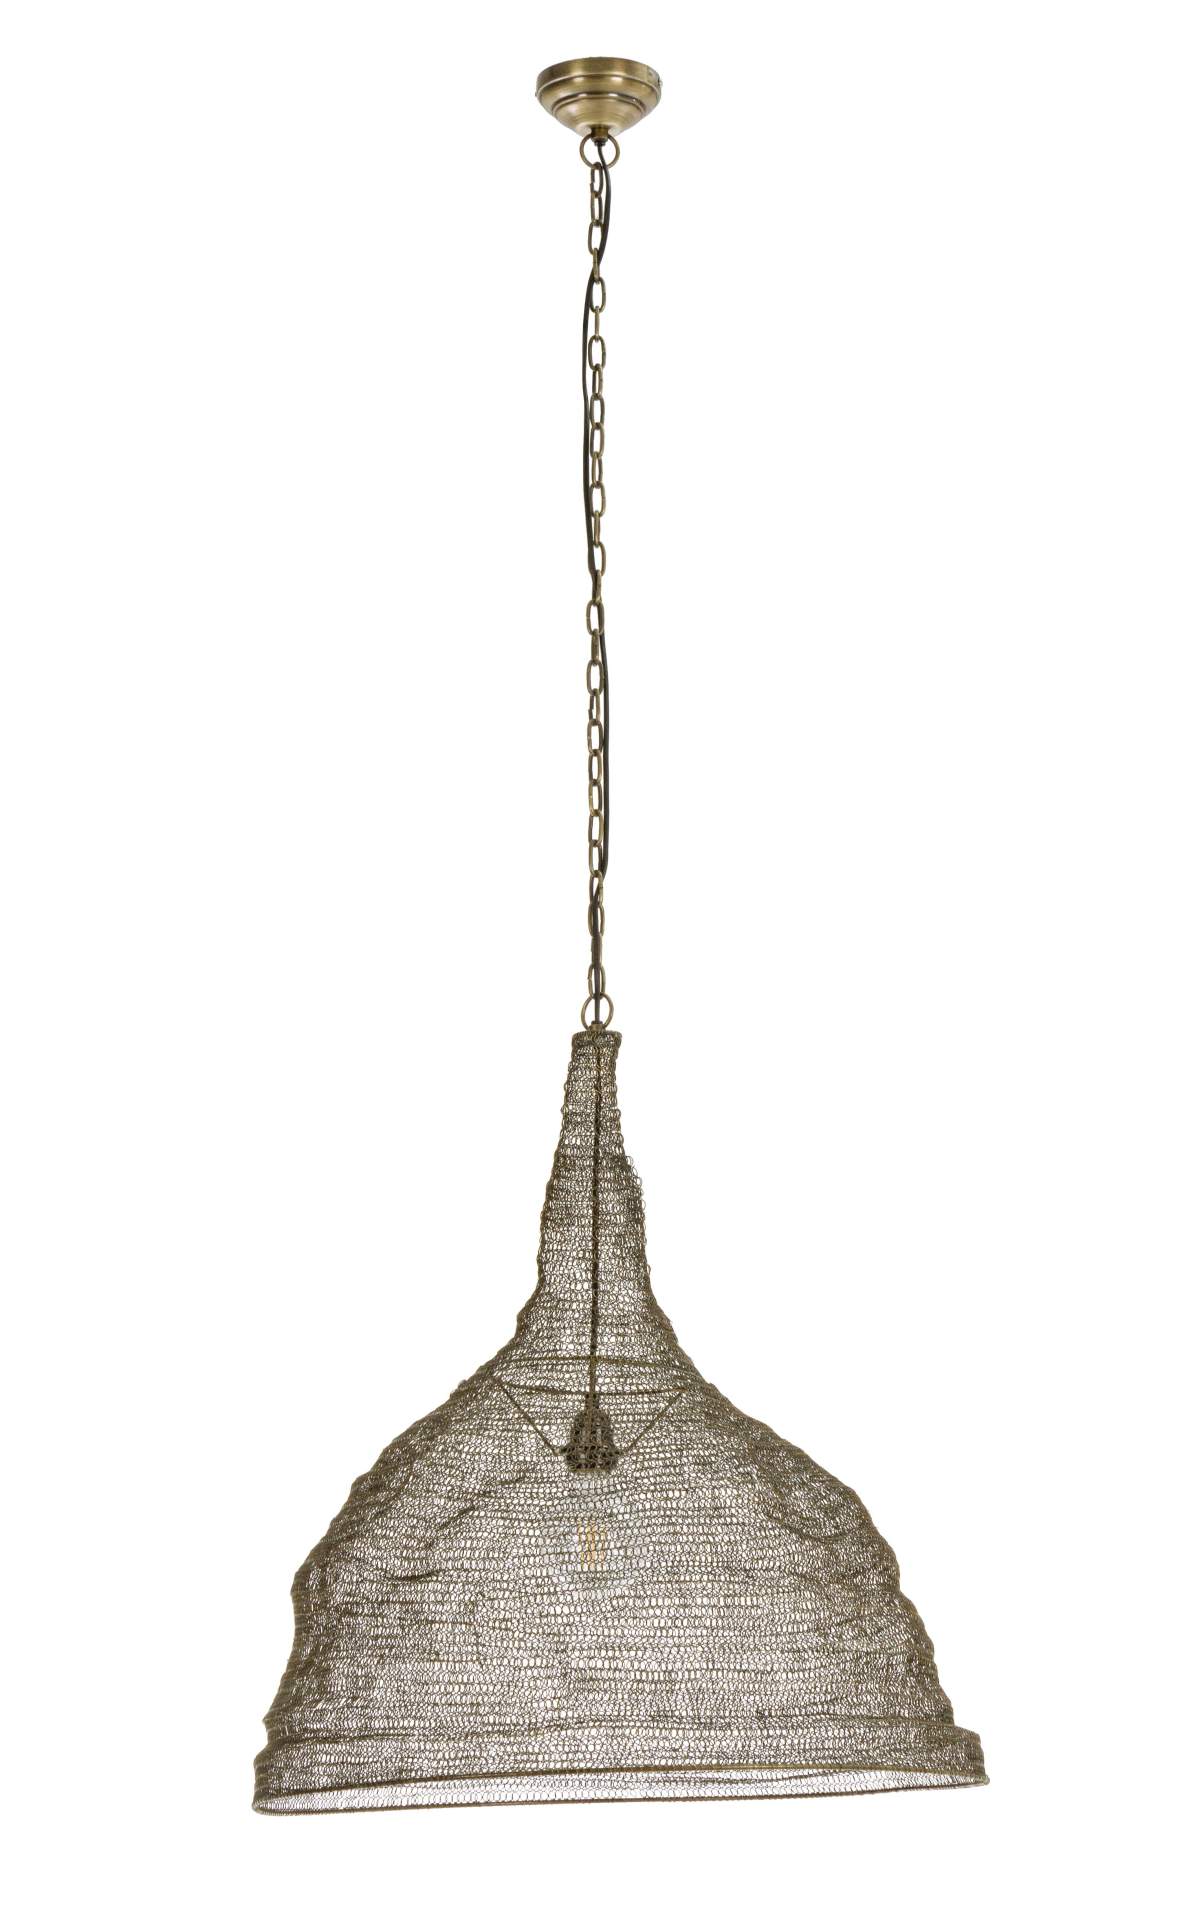 Die Hängeleuchte Amish überzeugt mit ihrem klassischen Design. Gefertigt wurde sie aus Metall, welches einen Messing Farbton besitzt.Der Lampenschirm ist auch aus Metall. Die Lampe besitzt eine Höhe von 64 cm.